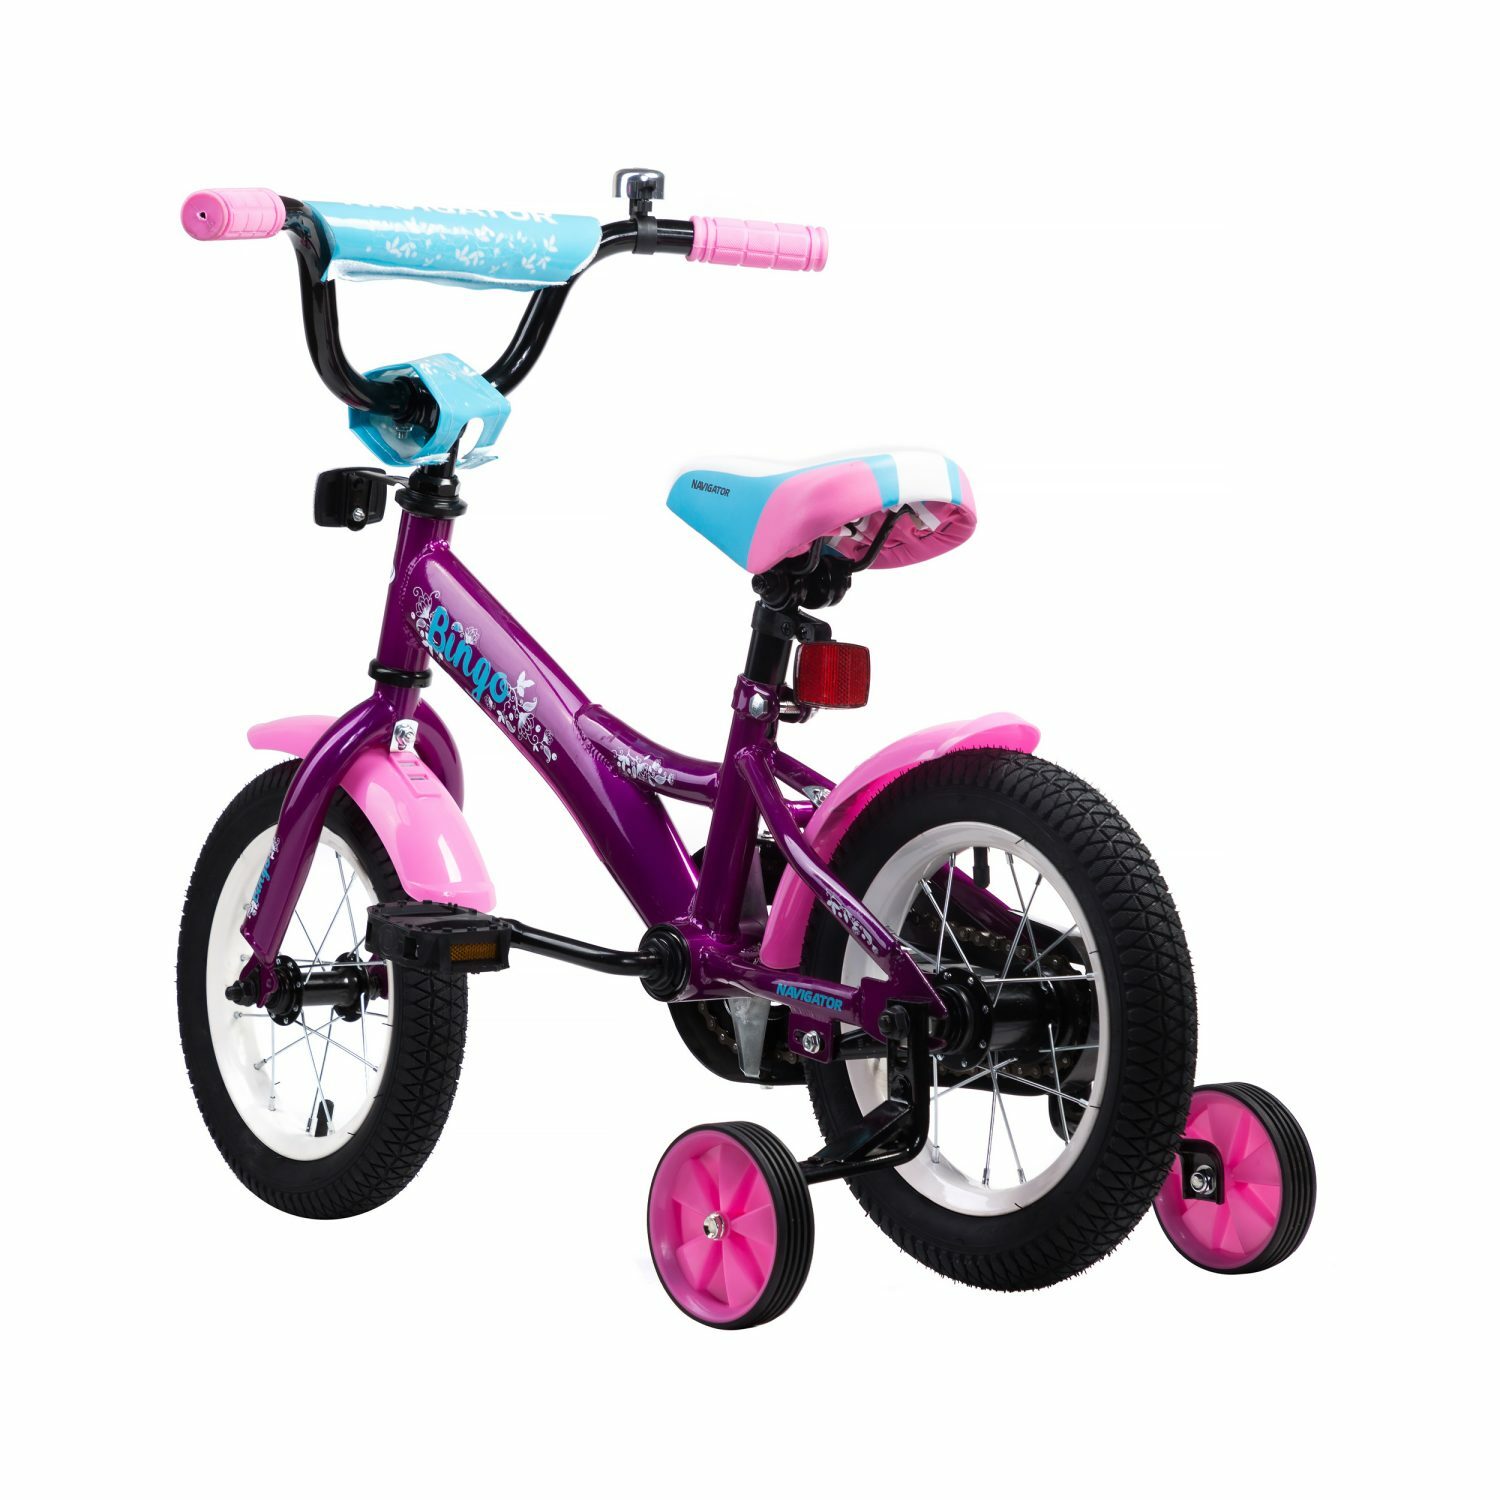 Детский велосипед от 5 лет для девочки. Детский велосипед навигатор Бинго. Детский велосипед Navigator buddy. Детский велосипед Navigator first Bike, колеса 12", фривил. Велосипед навигатор Миньоны. Колеса 12 дюймов.